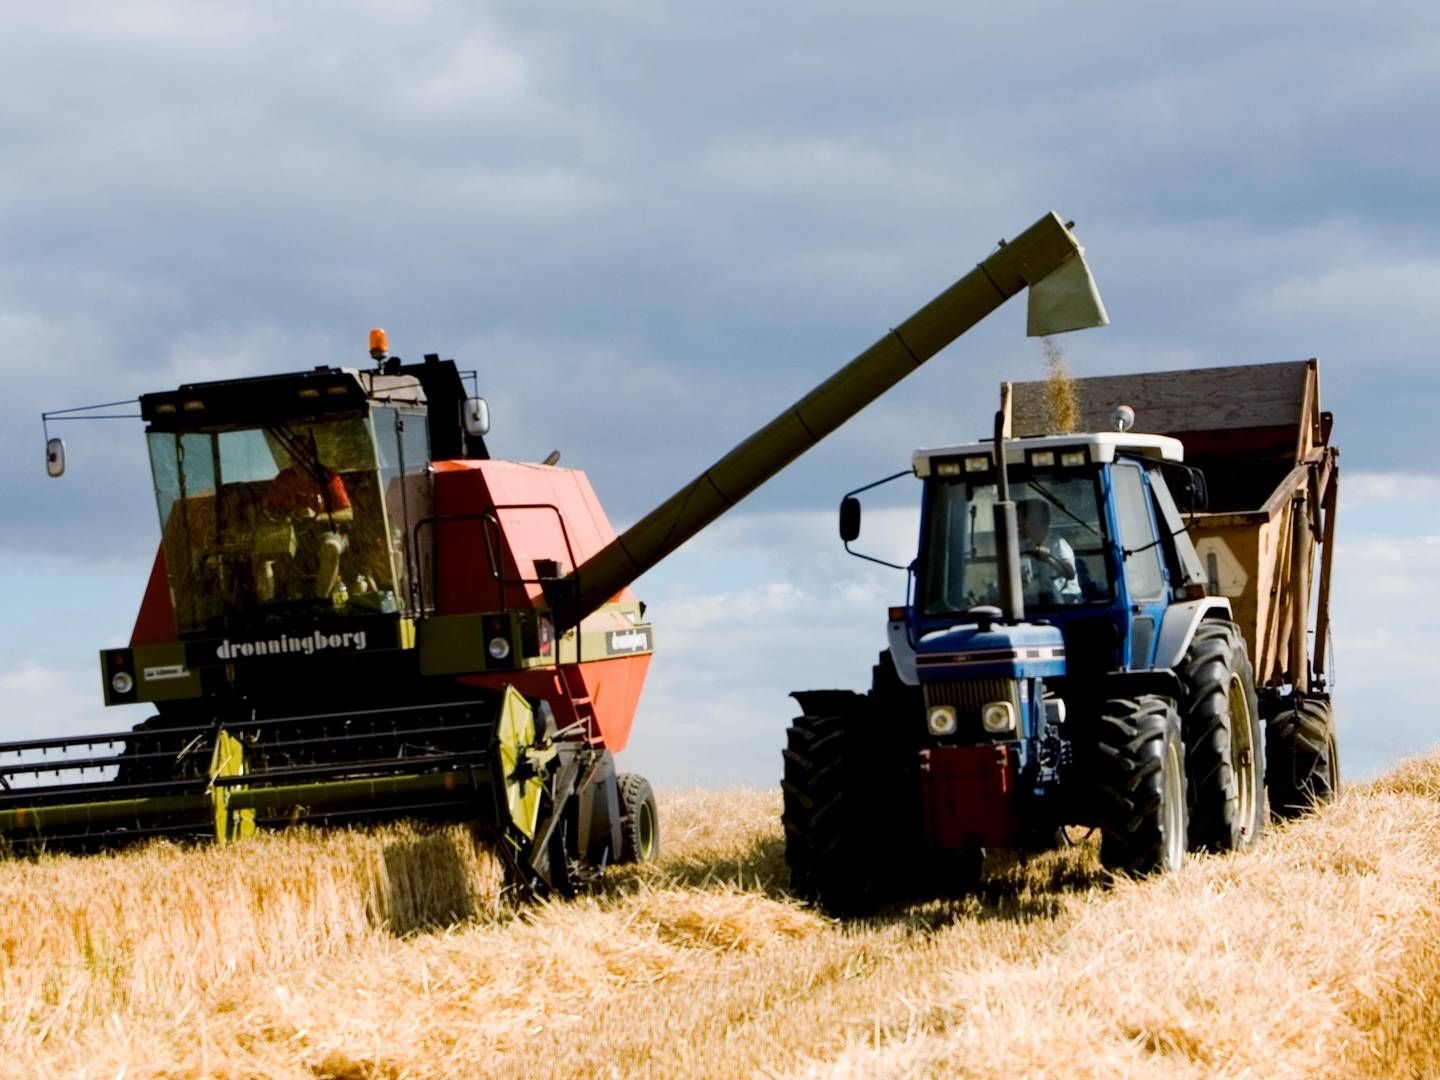 Når det gælder landbrugsråvarer, forudser Verdensbanken, at prisen på hvede i år vil stige med 40 pct. til det højeste nogensinde. | Foto: Carsten Ingemann/ERH